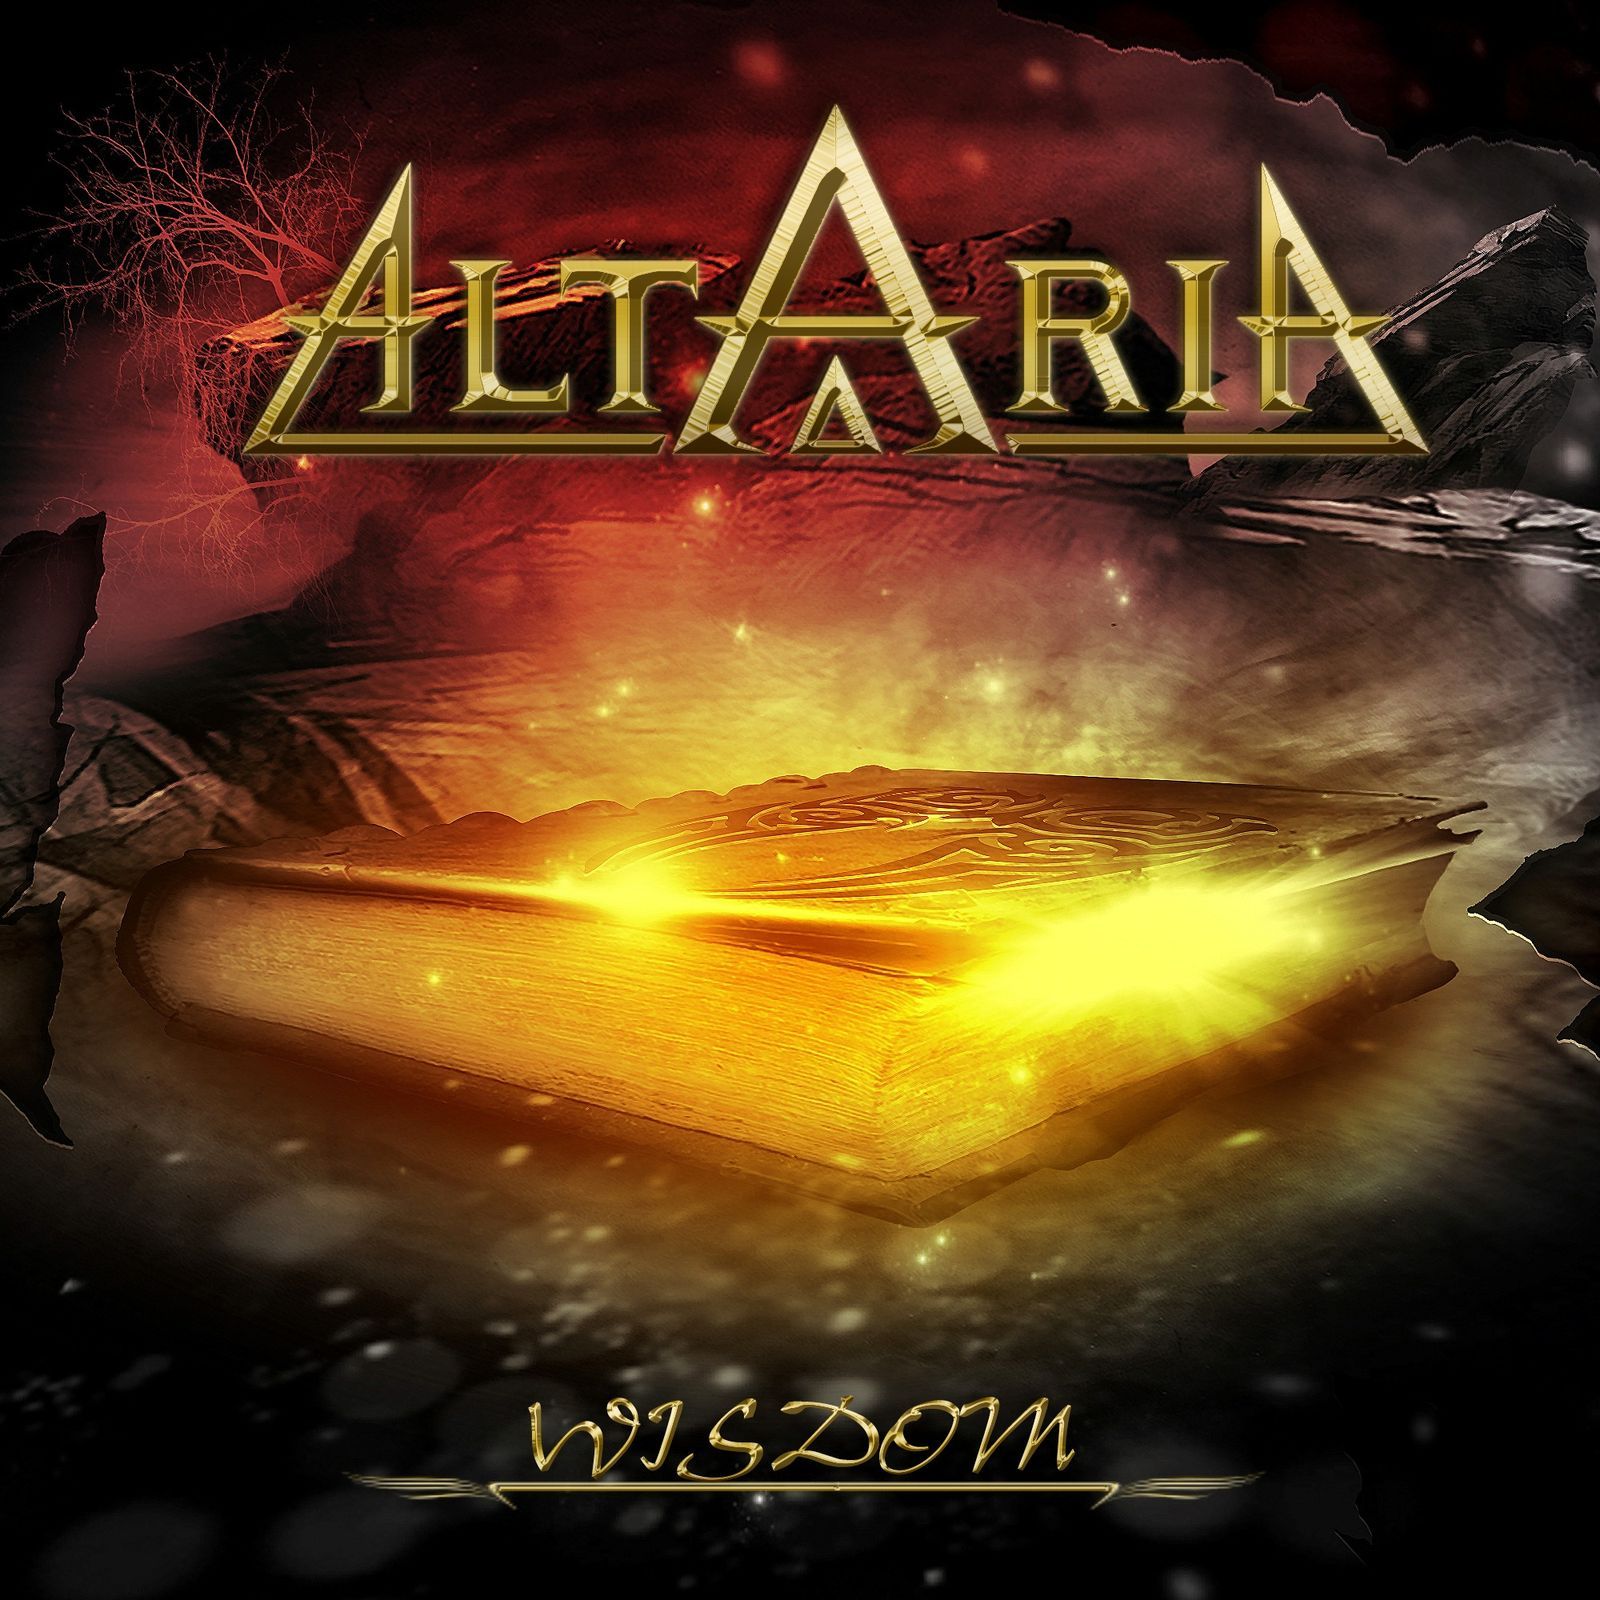 Altaria - Without Warning (lyric video)